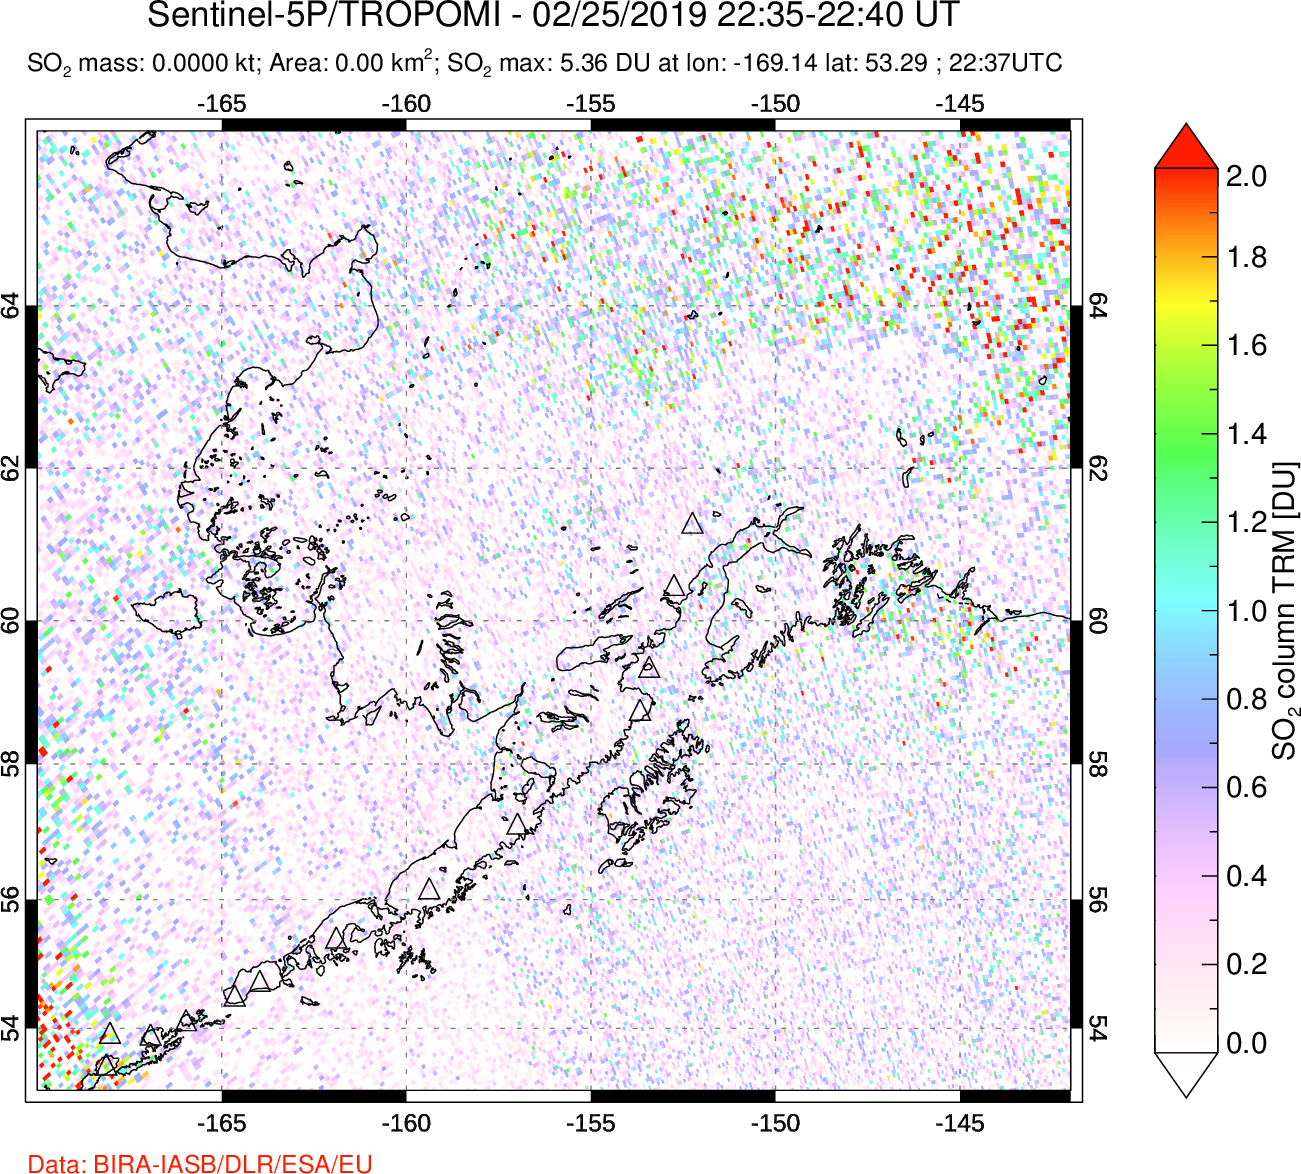 A sulfur dioxide image over Alaska, USA on Feb 25, 2019.